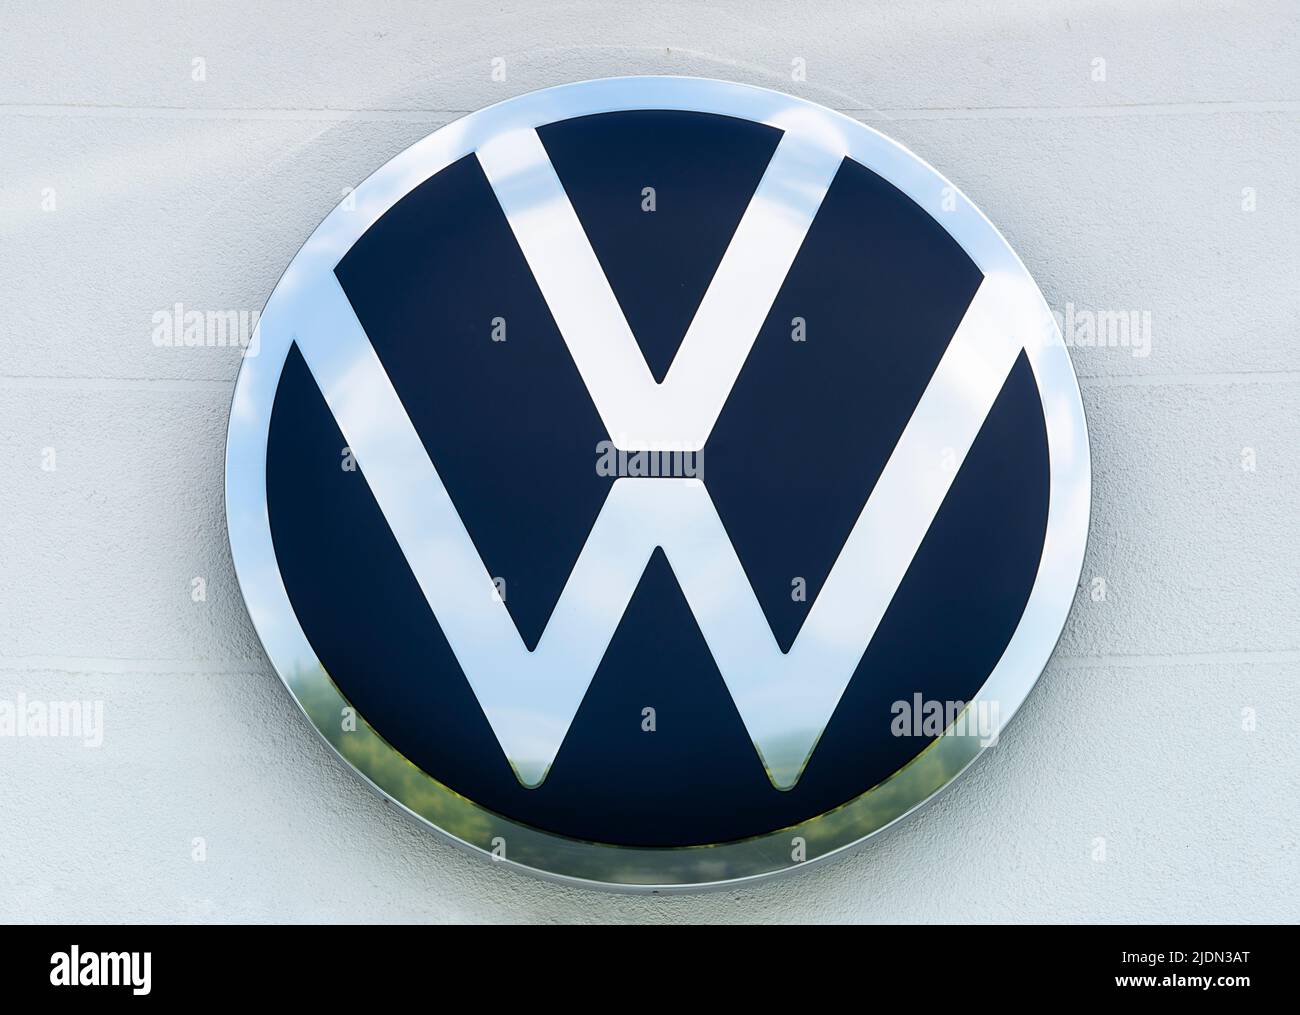 Firmenschild und Logo der Autofirma VW, Volkswagen Stock Photo